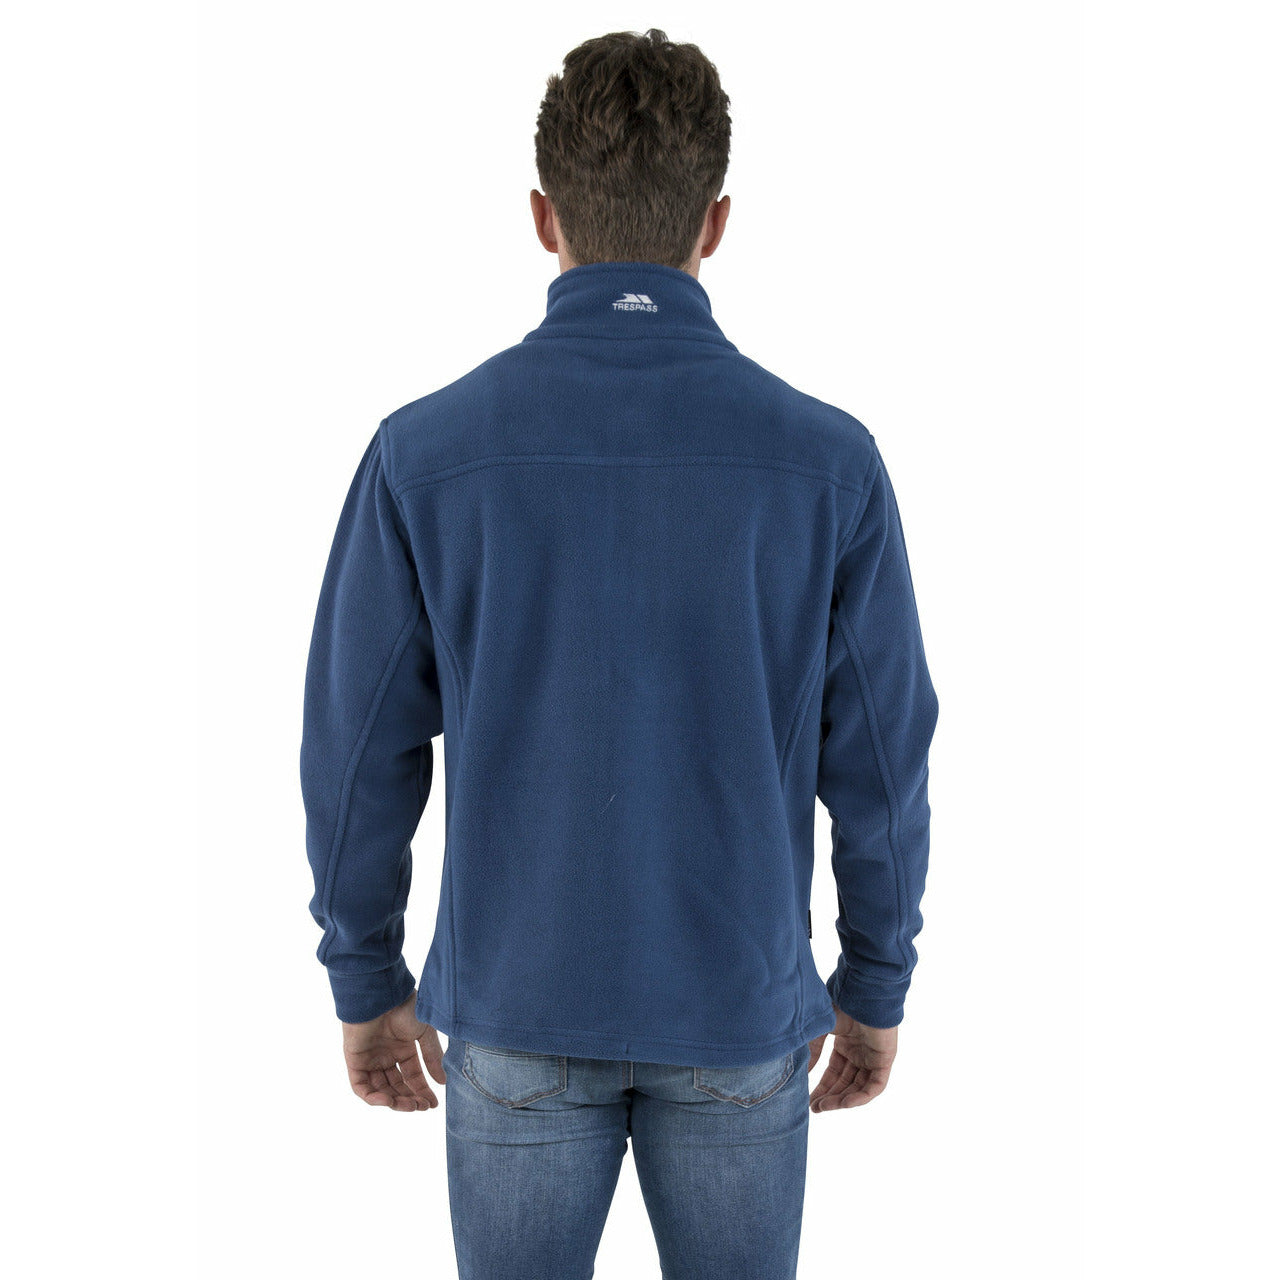 Bernal Mens Full Zip Fleece Jacket - Navy Tone